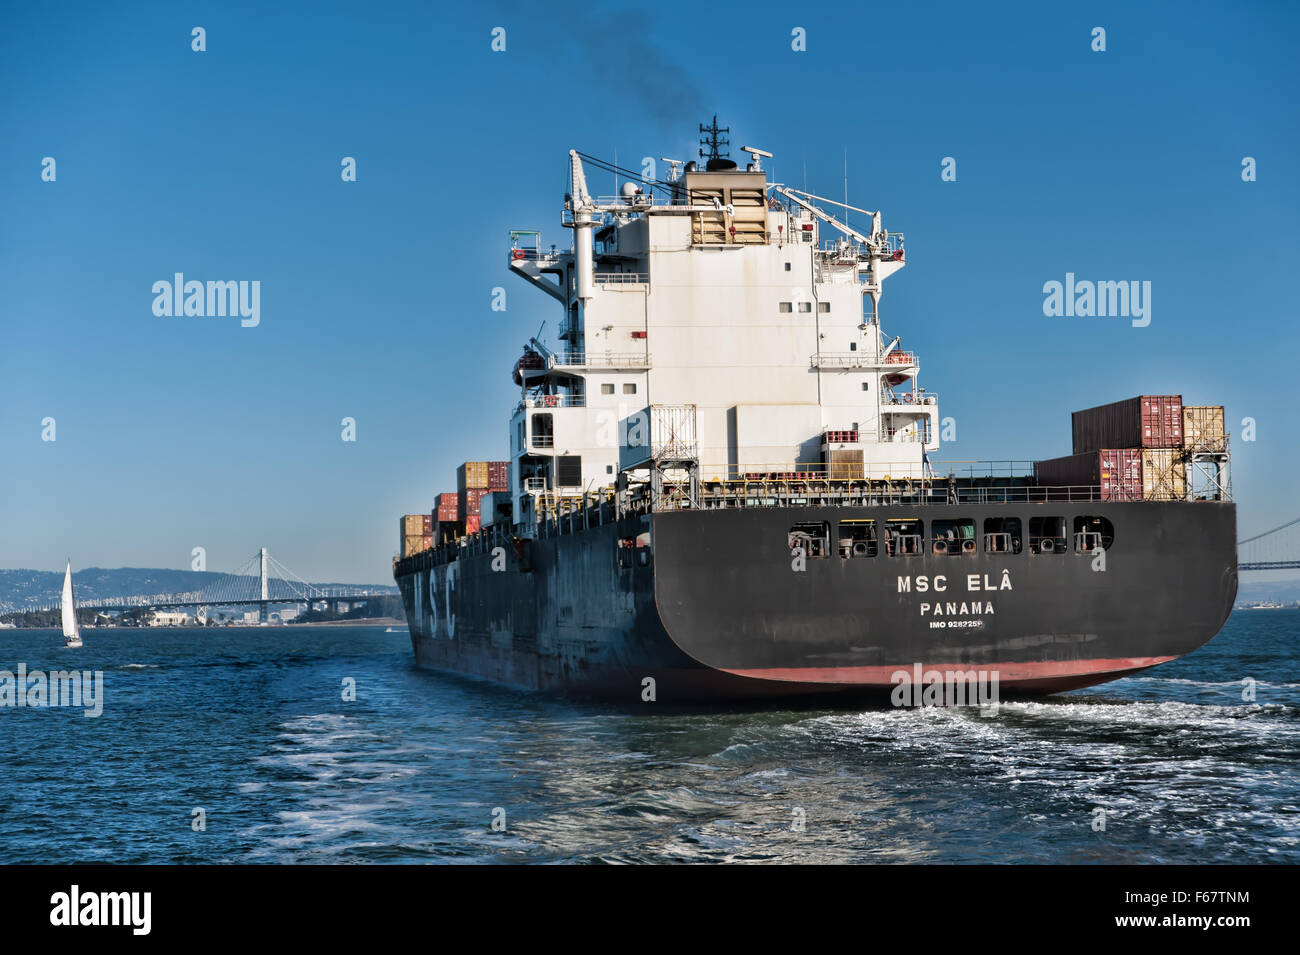 Bucht von SAN FRANCISCO, CA - 6. November 2015: MSC Ela segelt in der San Francisco Bay, Kalifornien. Aufgenommen am 6. November 2015 Stockfoto